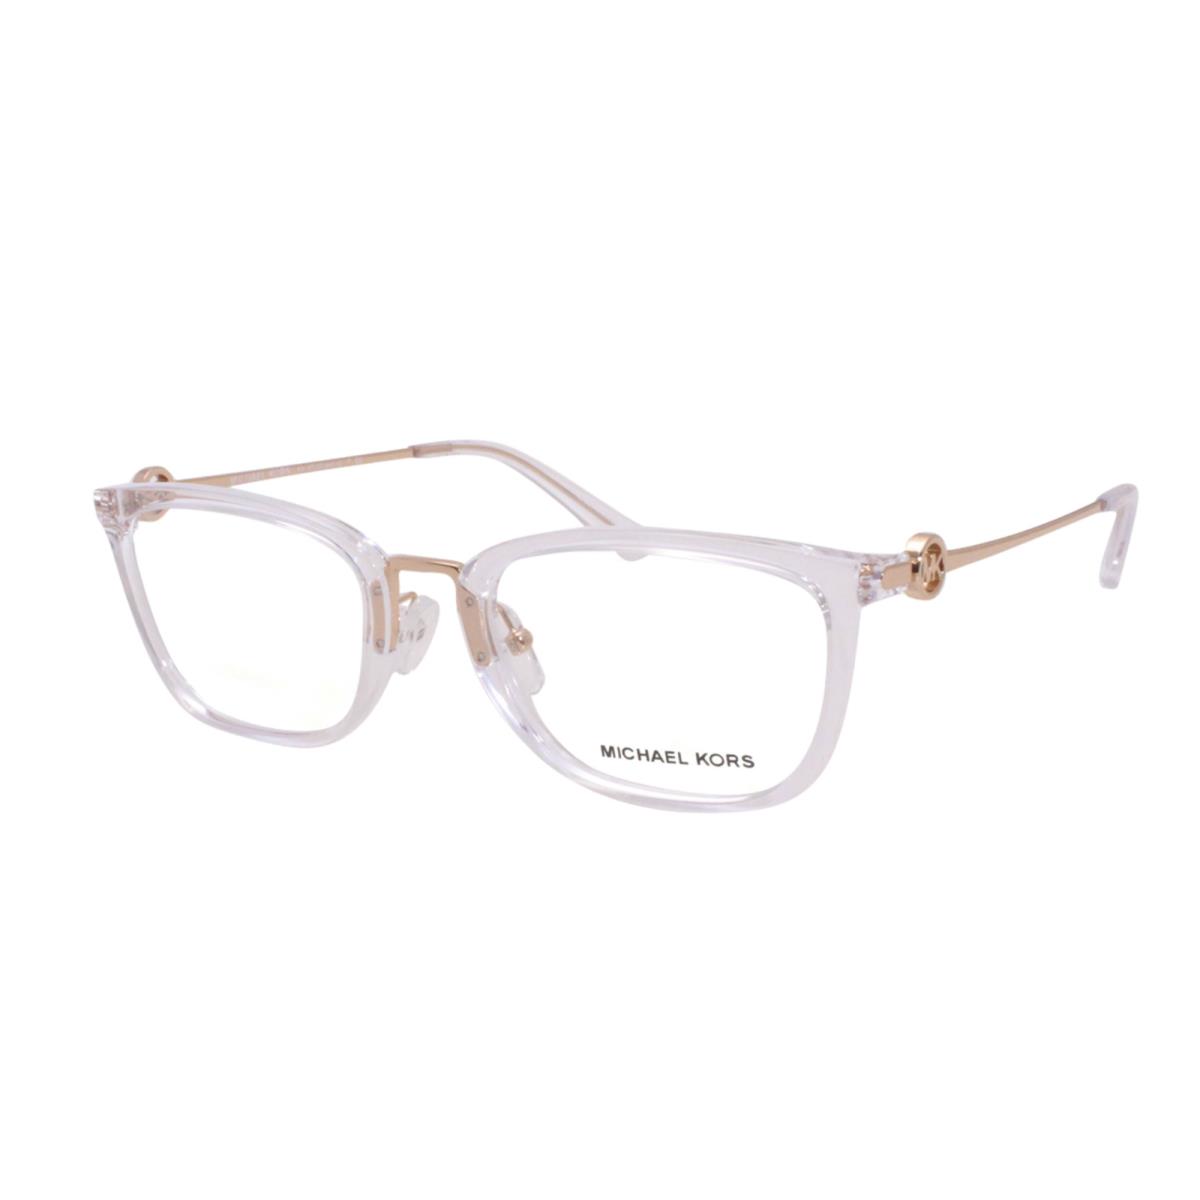 Michael Kors Eyeglasses MK 4054 Captiva 3105 52-20 140 Clear Gold Frames